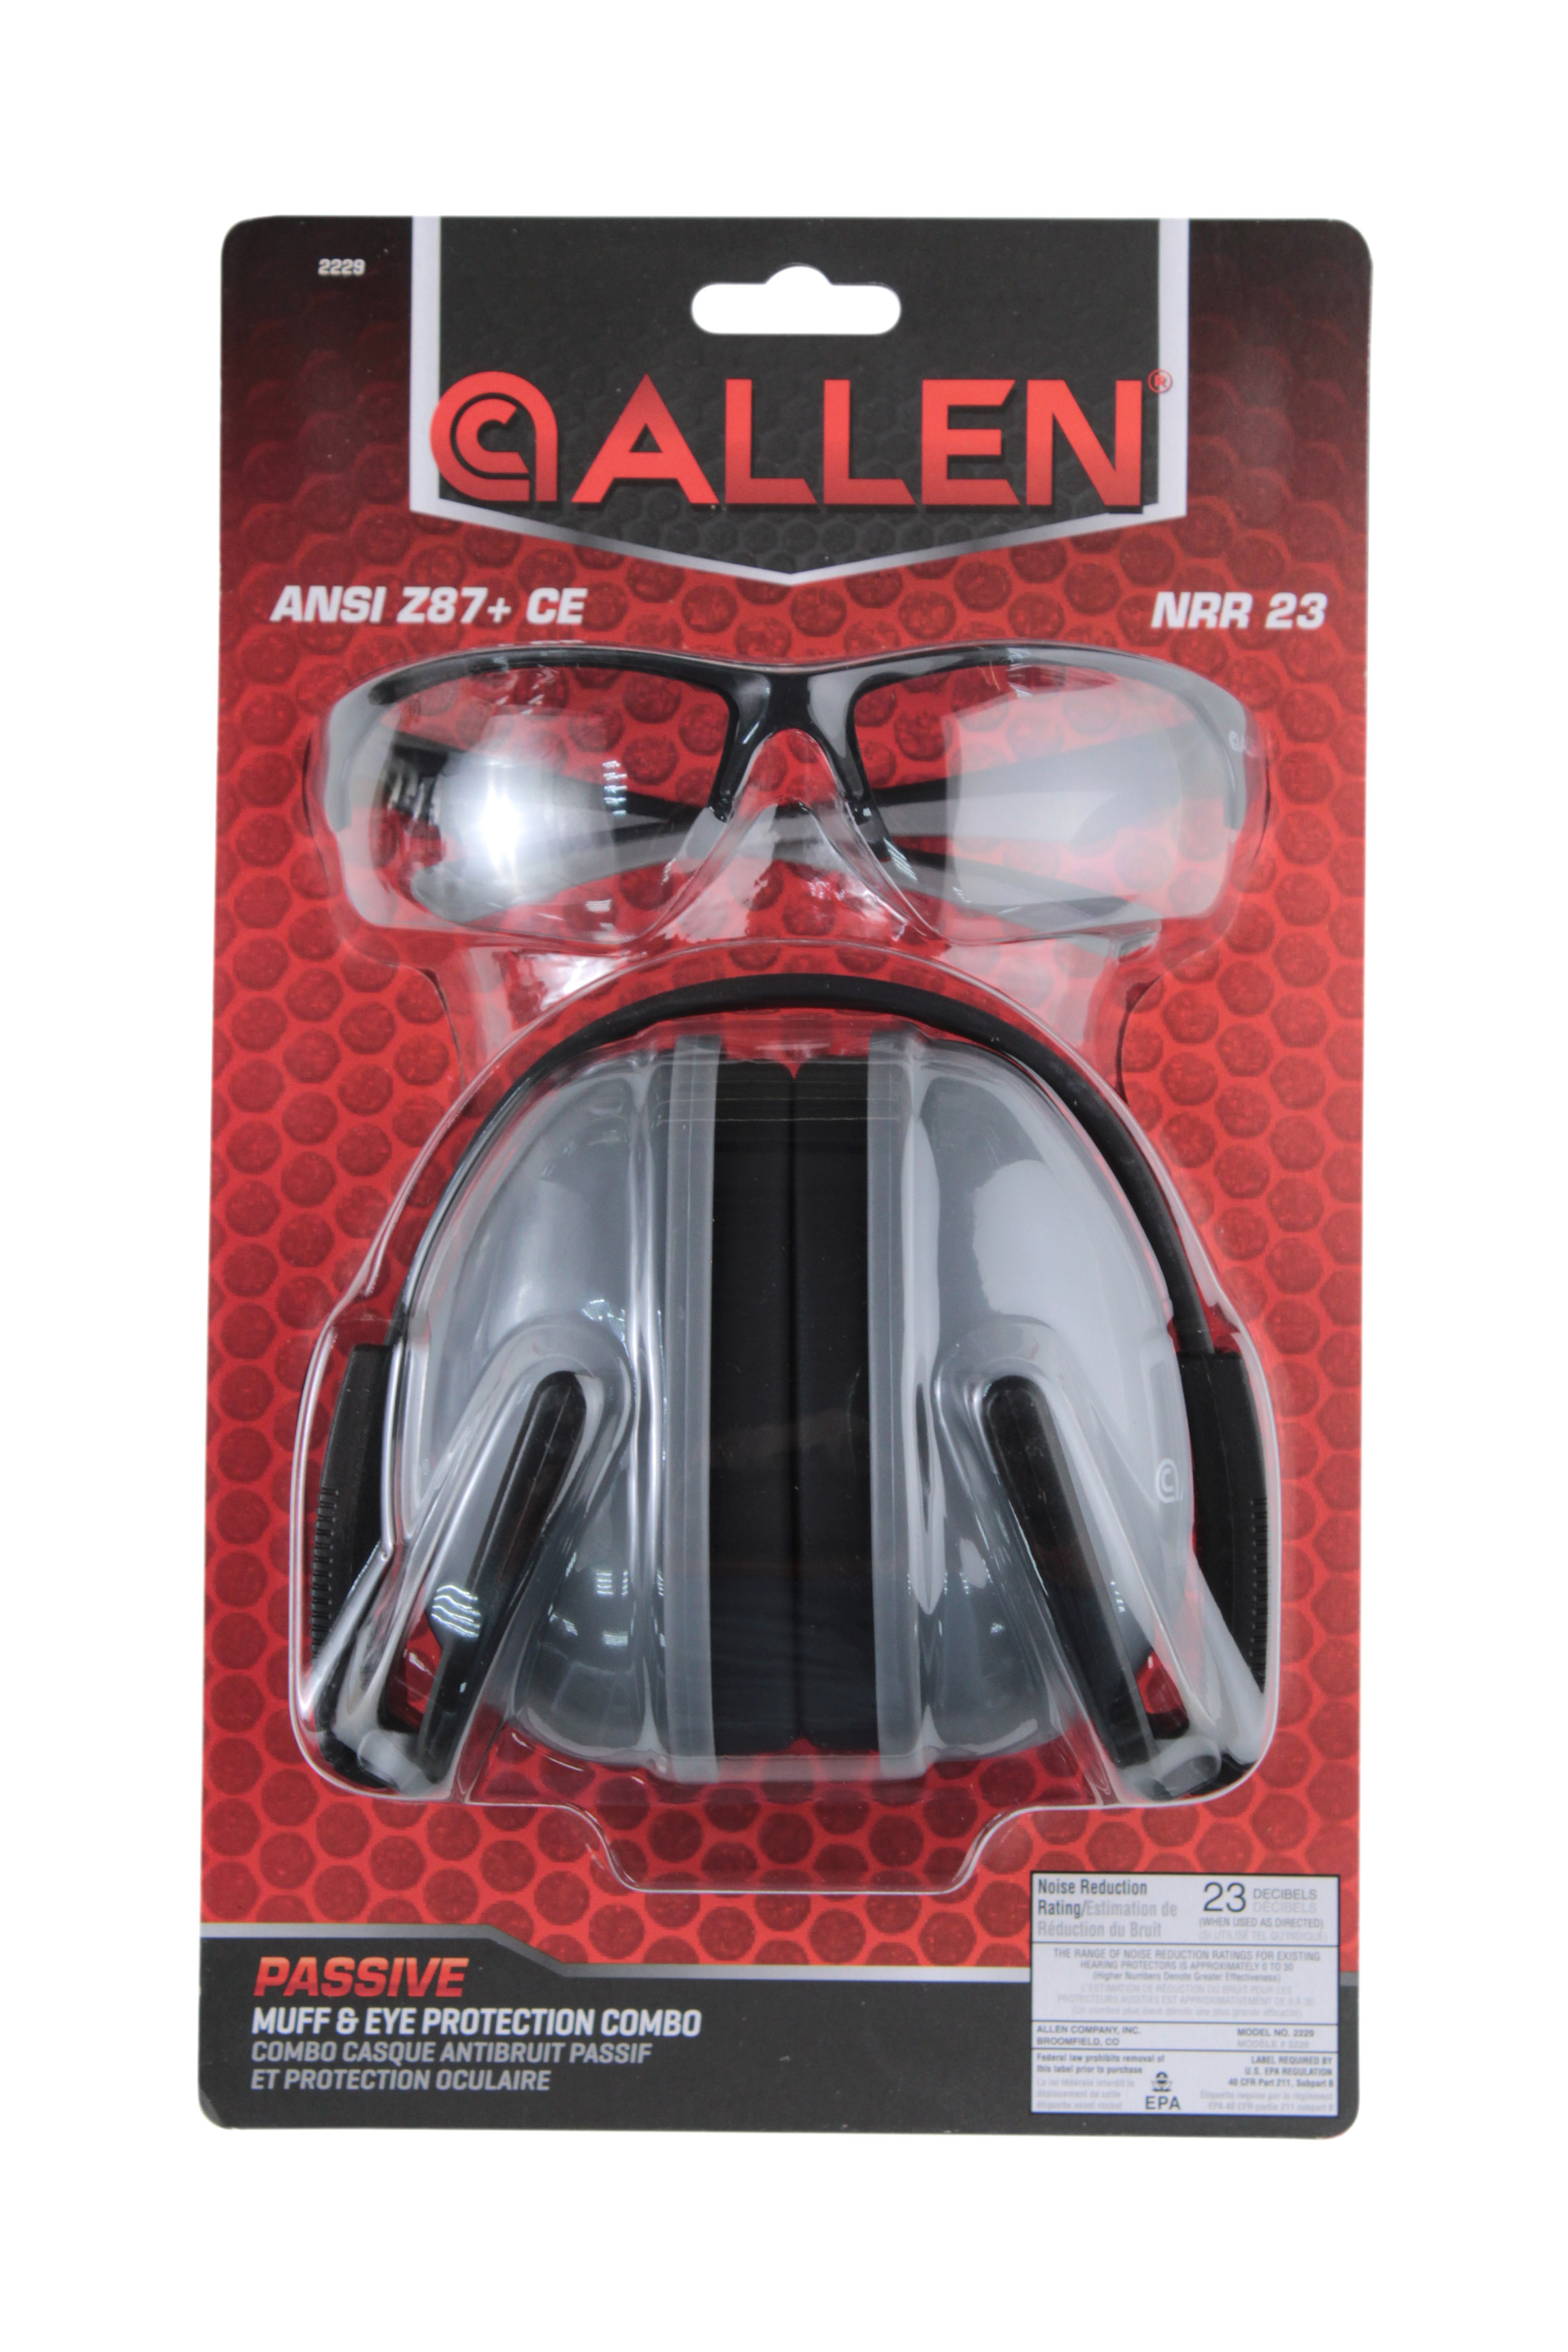 Комплект Allen Passive Muff Protection наушники + очки для стрельбы